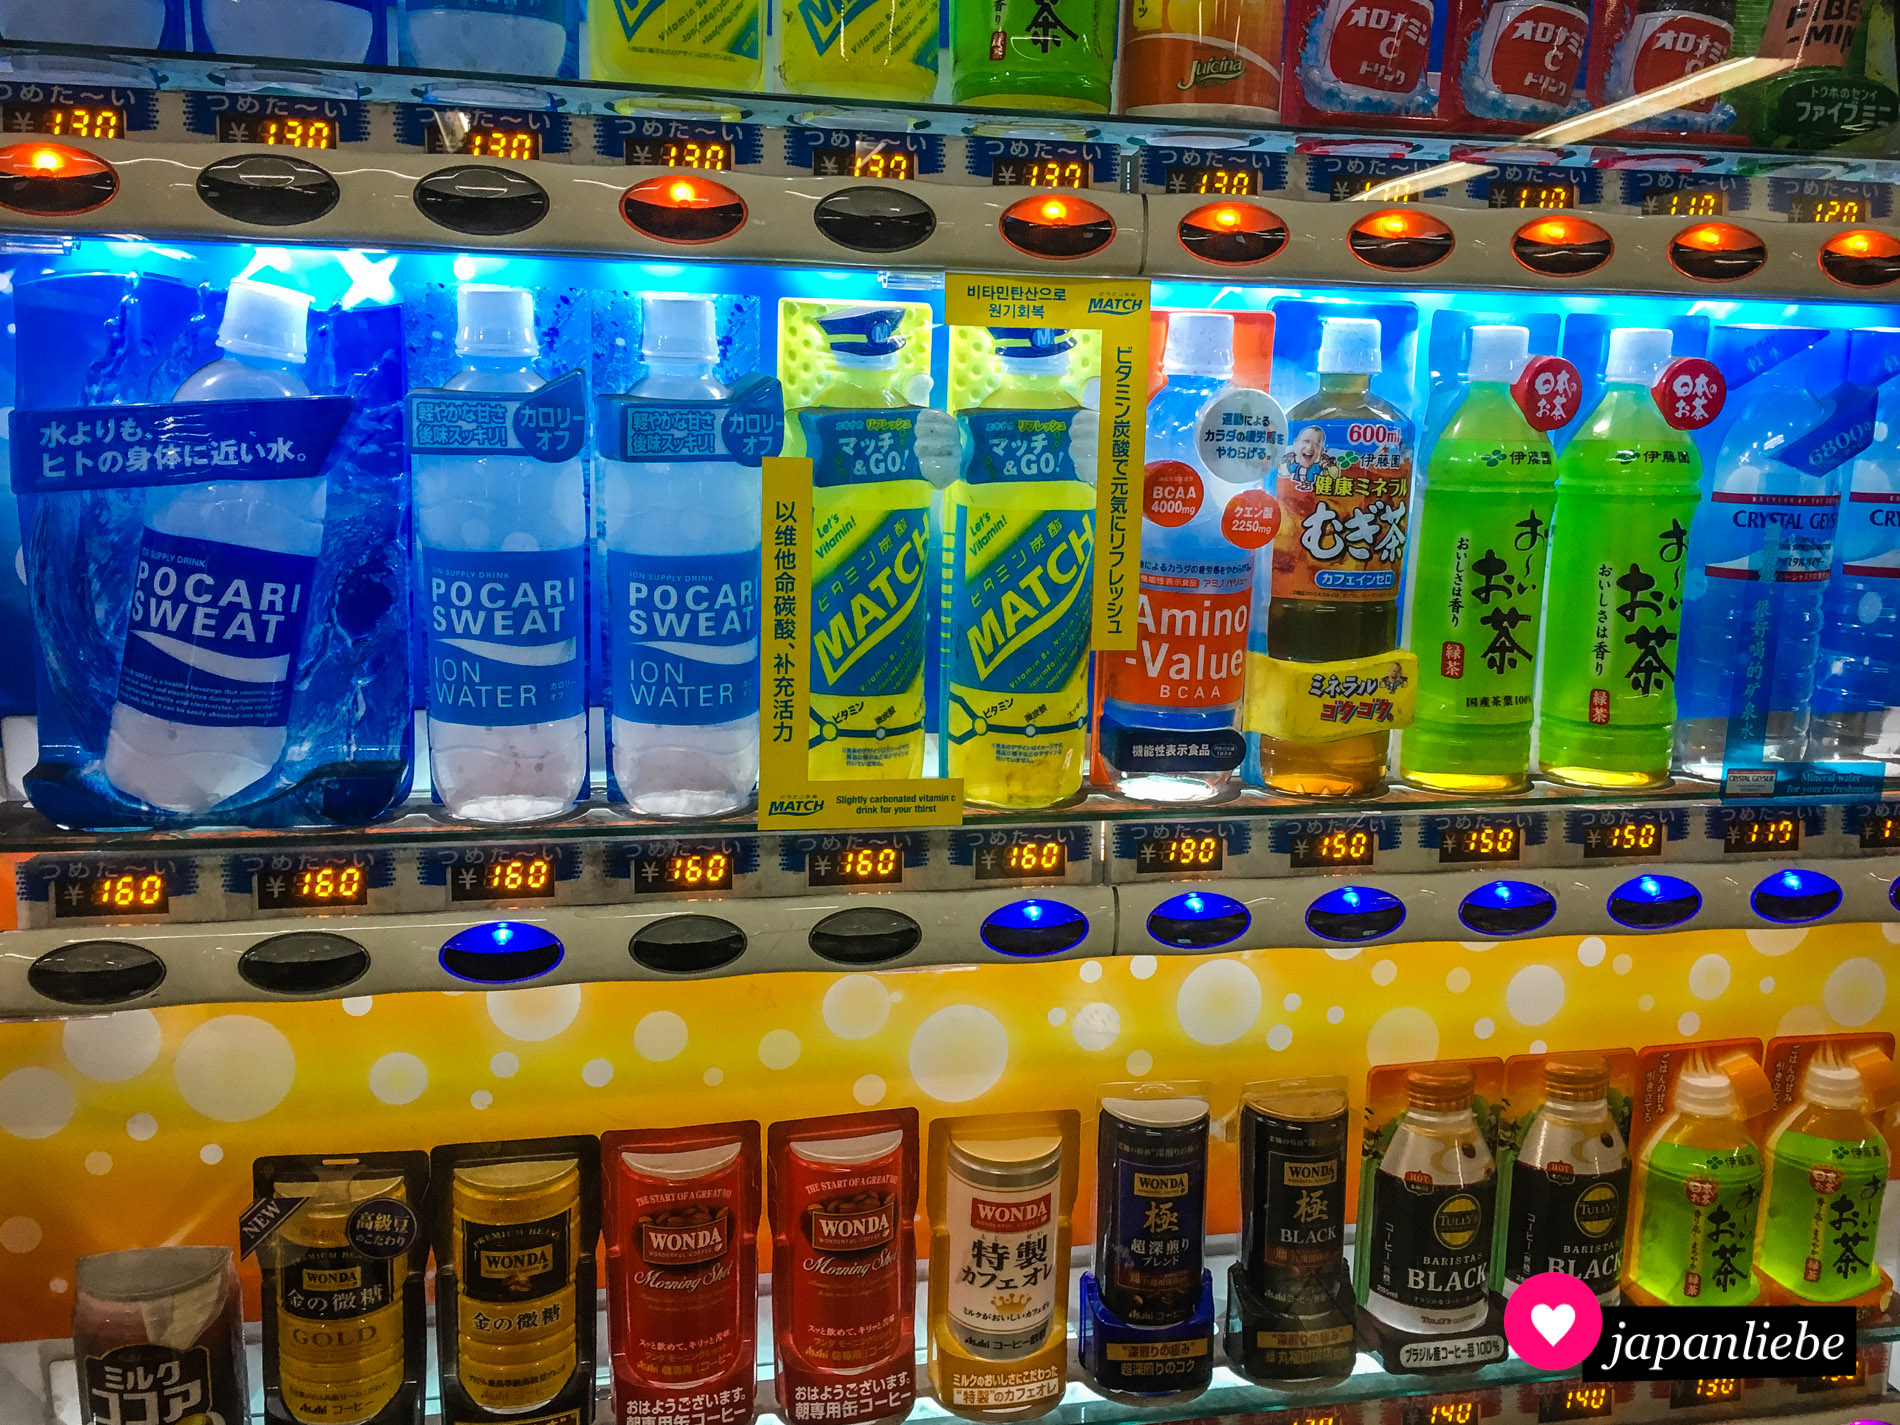 Ein Getränkeautomat mit Pocari Sweat in unterschiedlichen Ausführungen.